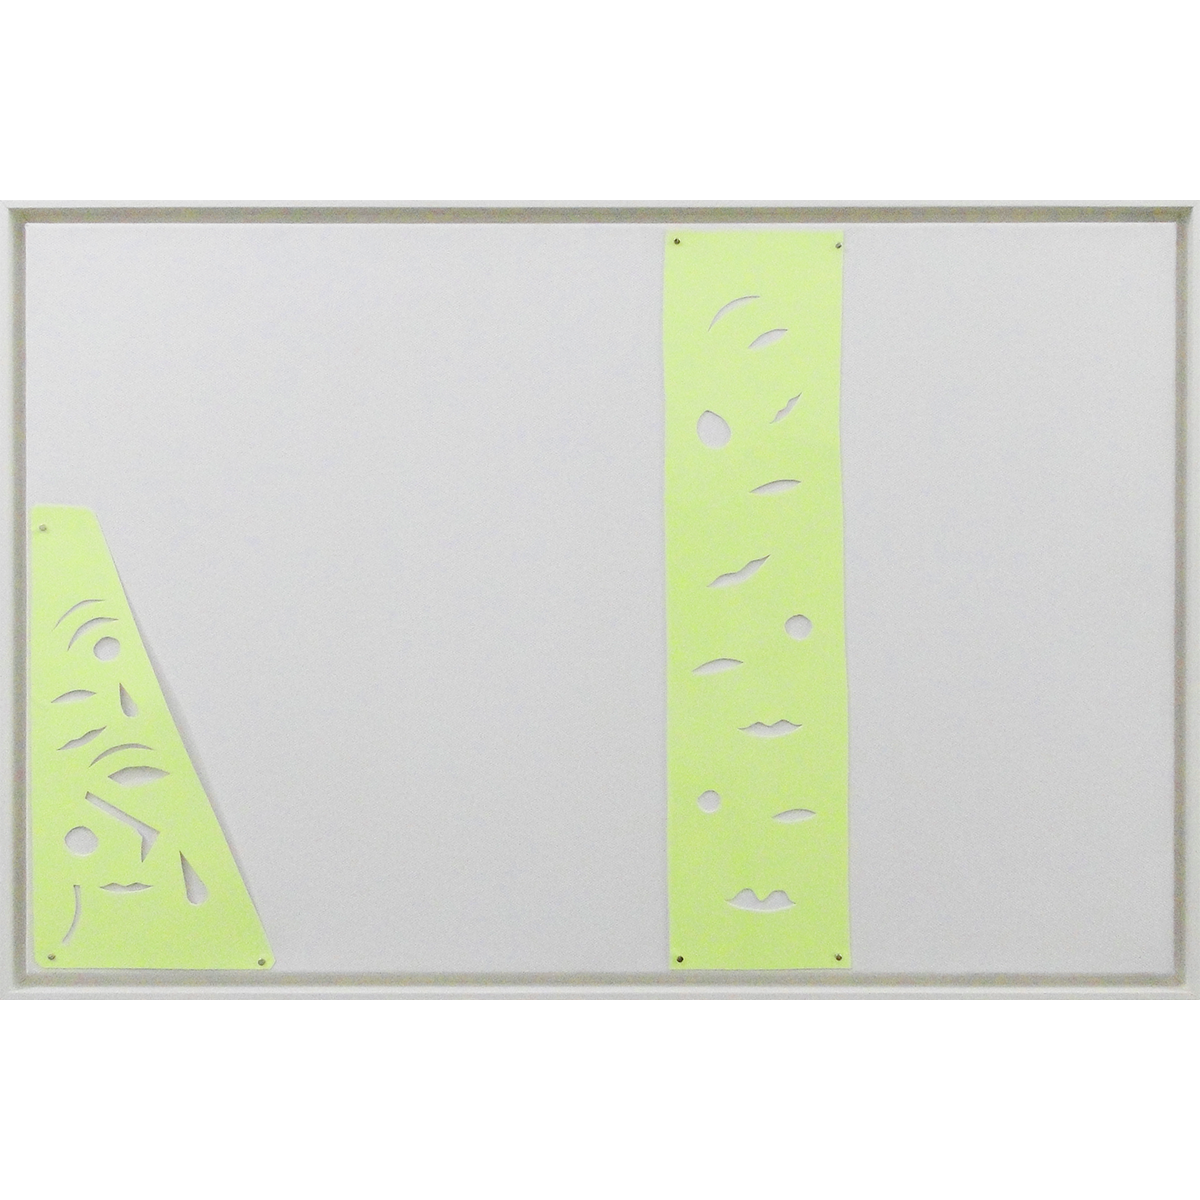 8805 - Pedro Matsuo, 42 x 62 cm, Frente - papel, aço, fita luminescente pregada sobre madeira e tela, Verso - grafite, acrílica sobre madeira e tela, ass. dt. 2024